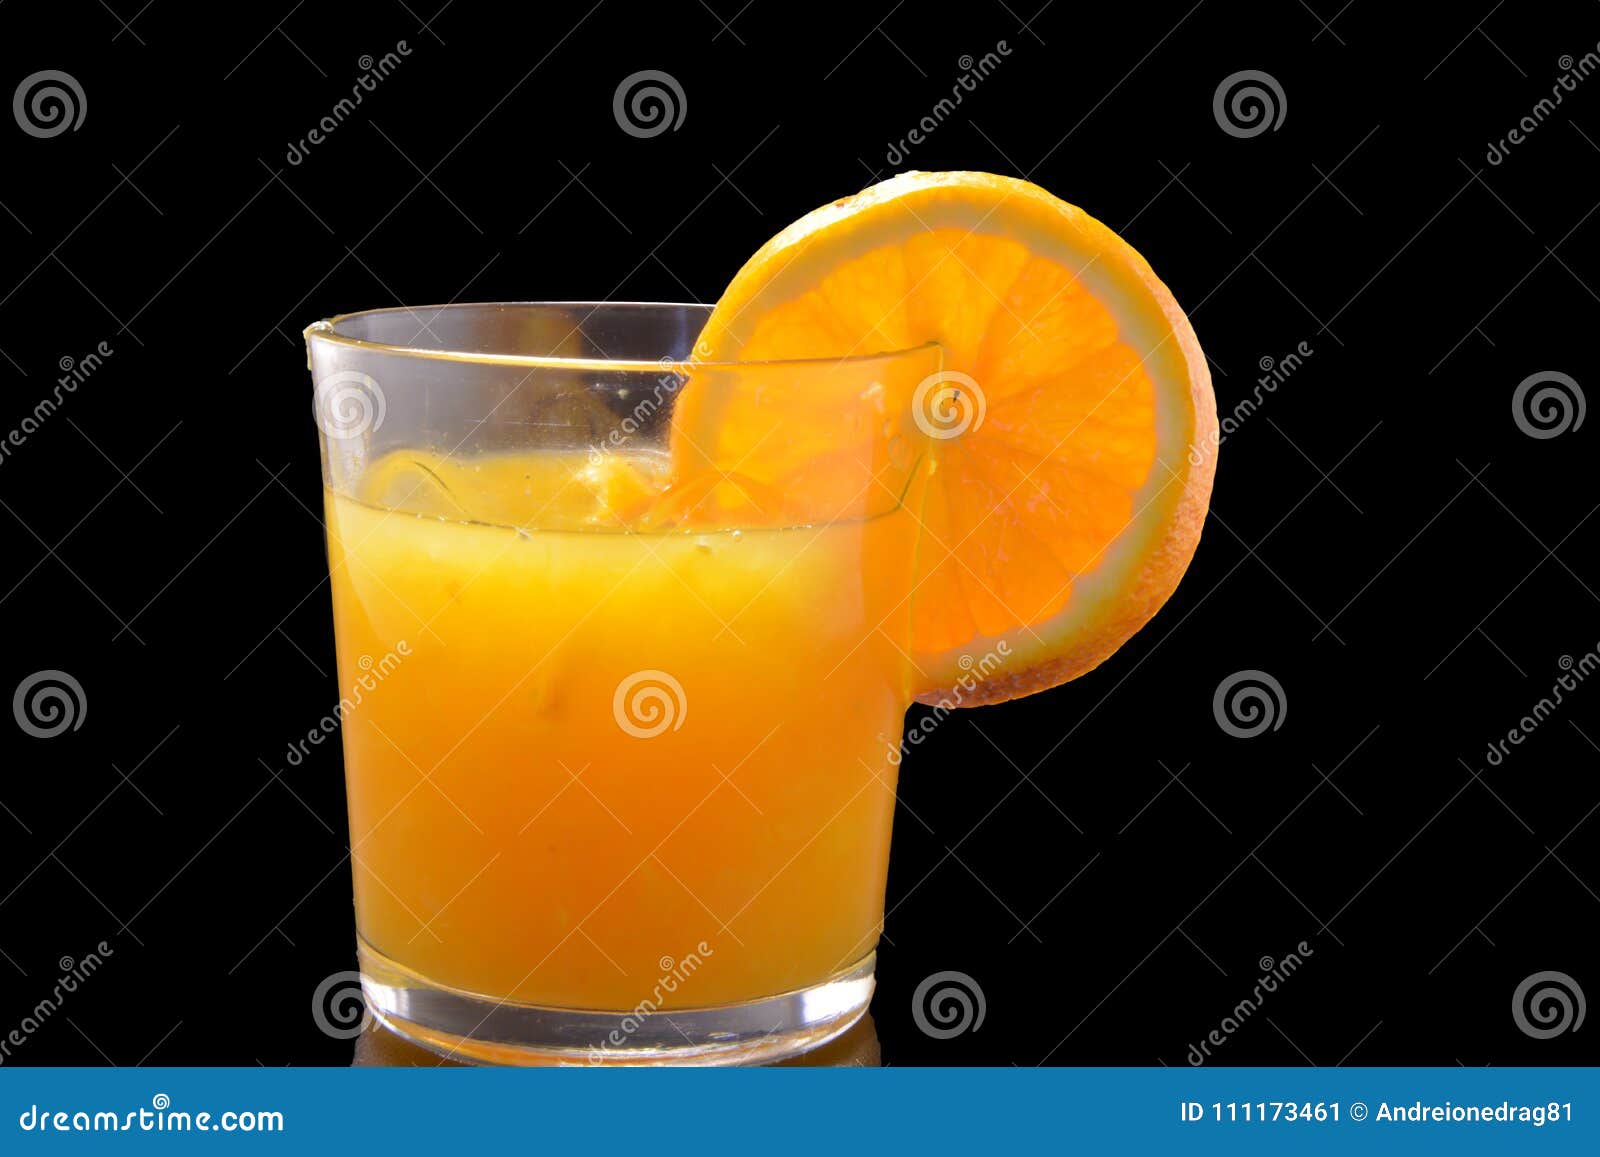 Orange Juice on Black Background Stock Image - Image of background ...